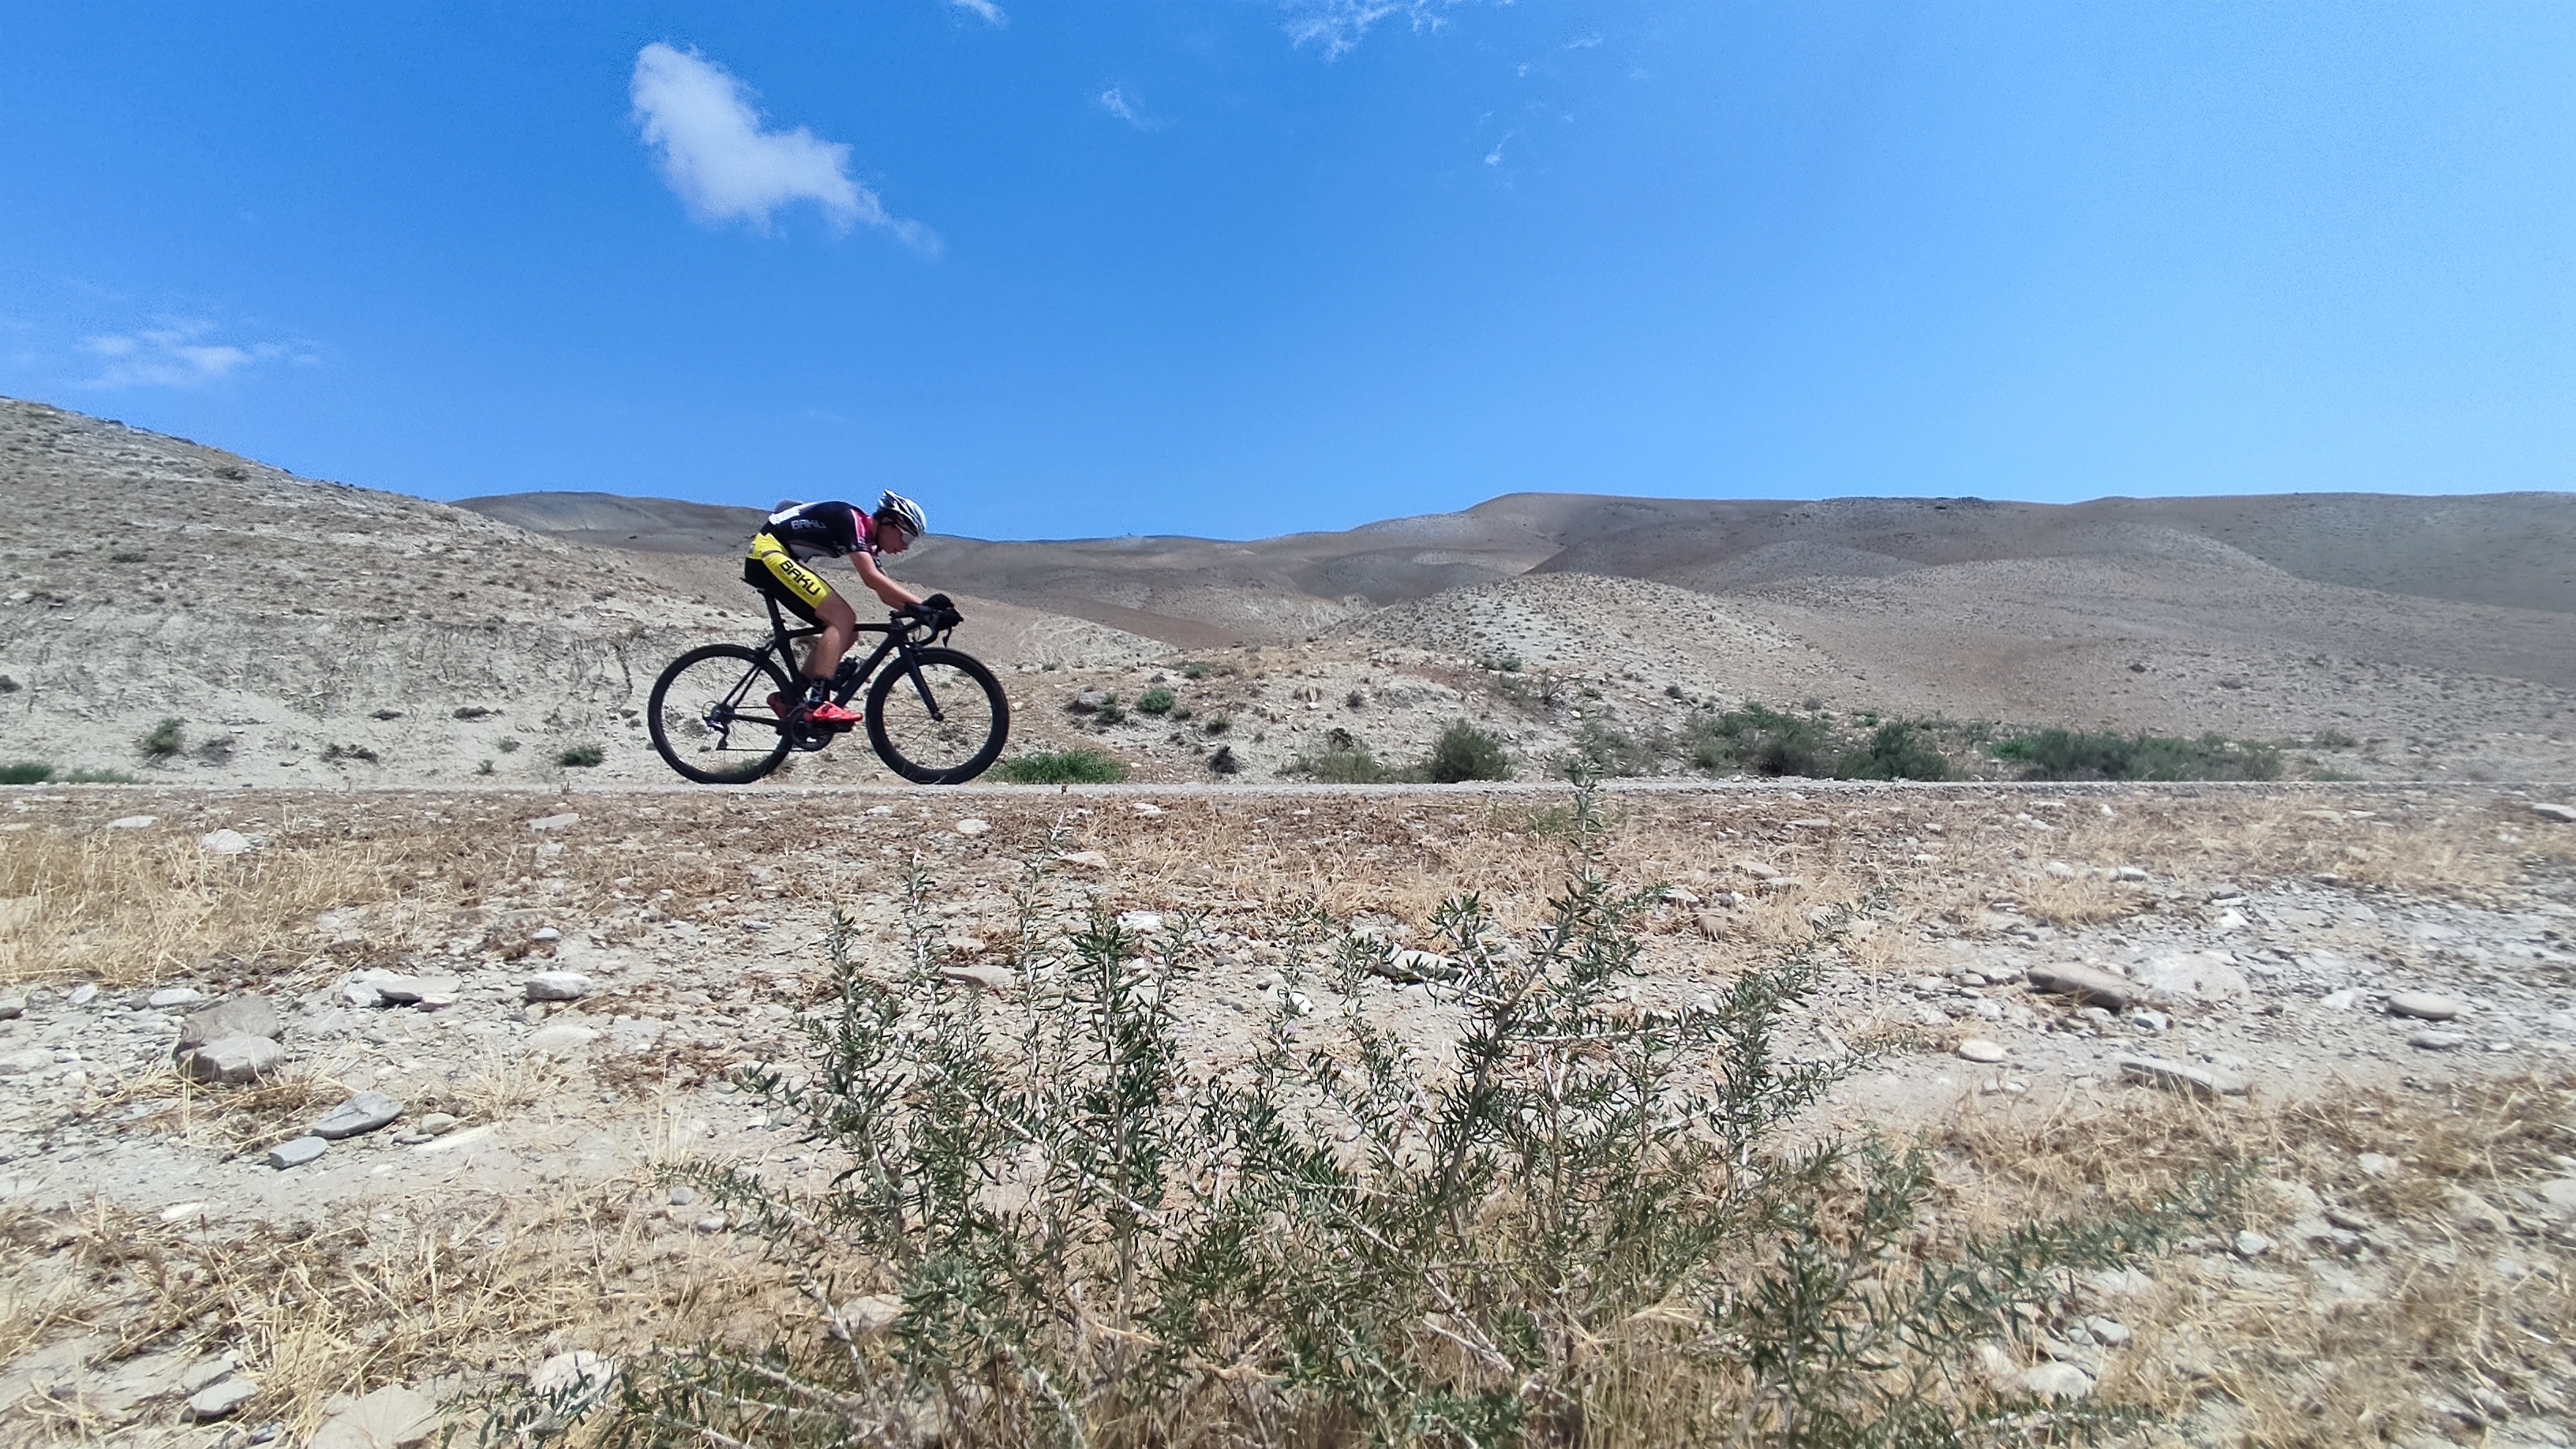 Şose velosipedi üzrə Azərbaycan çempionatına start verilib